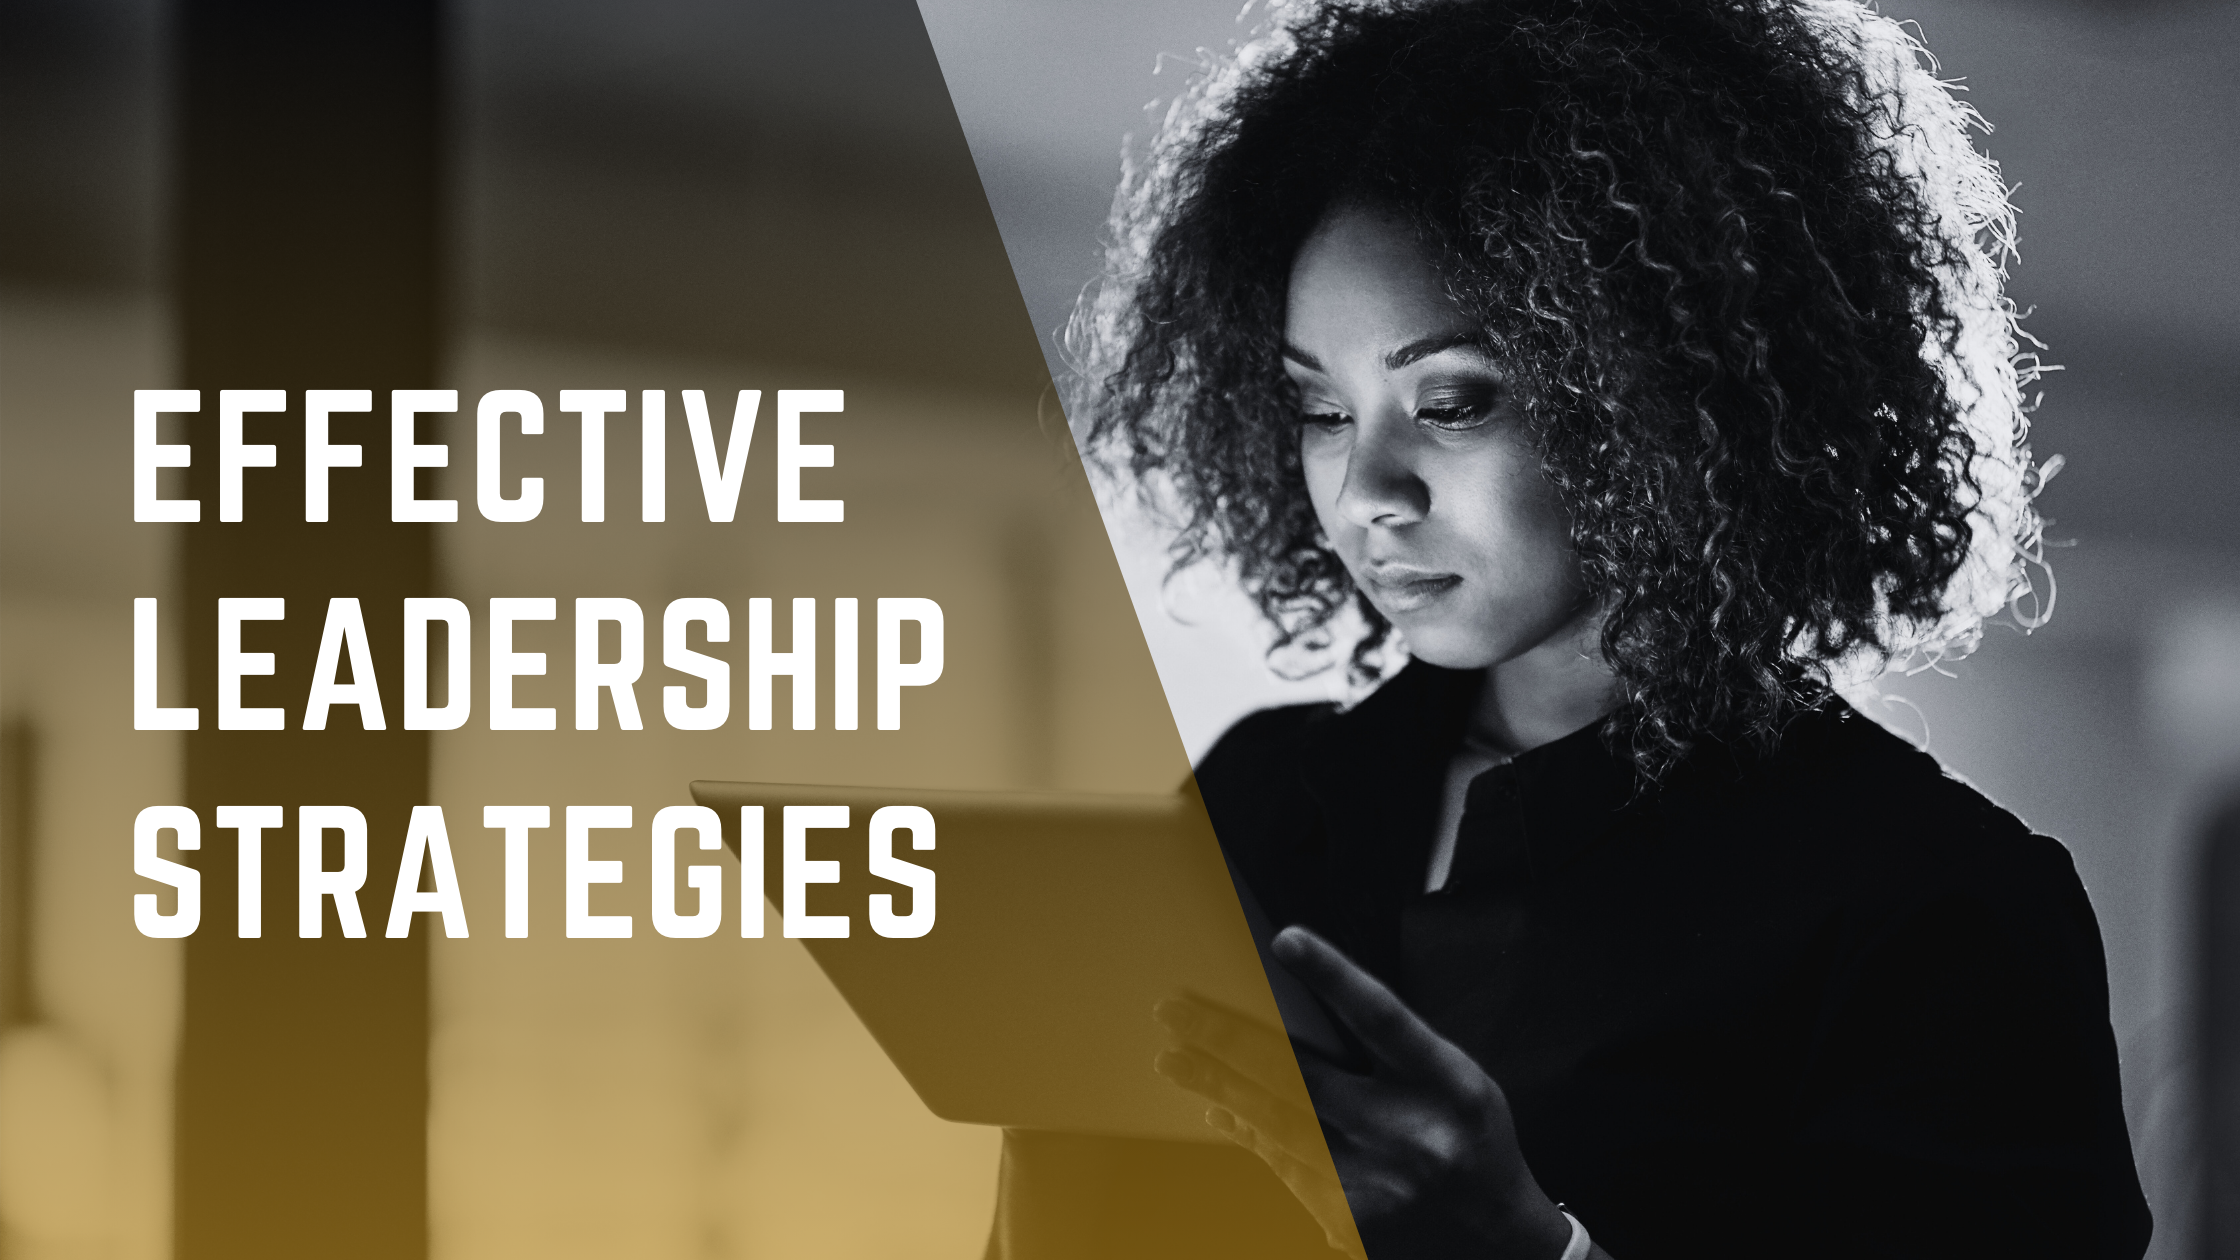 Effective Leadership Strategies